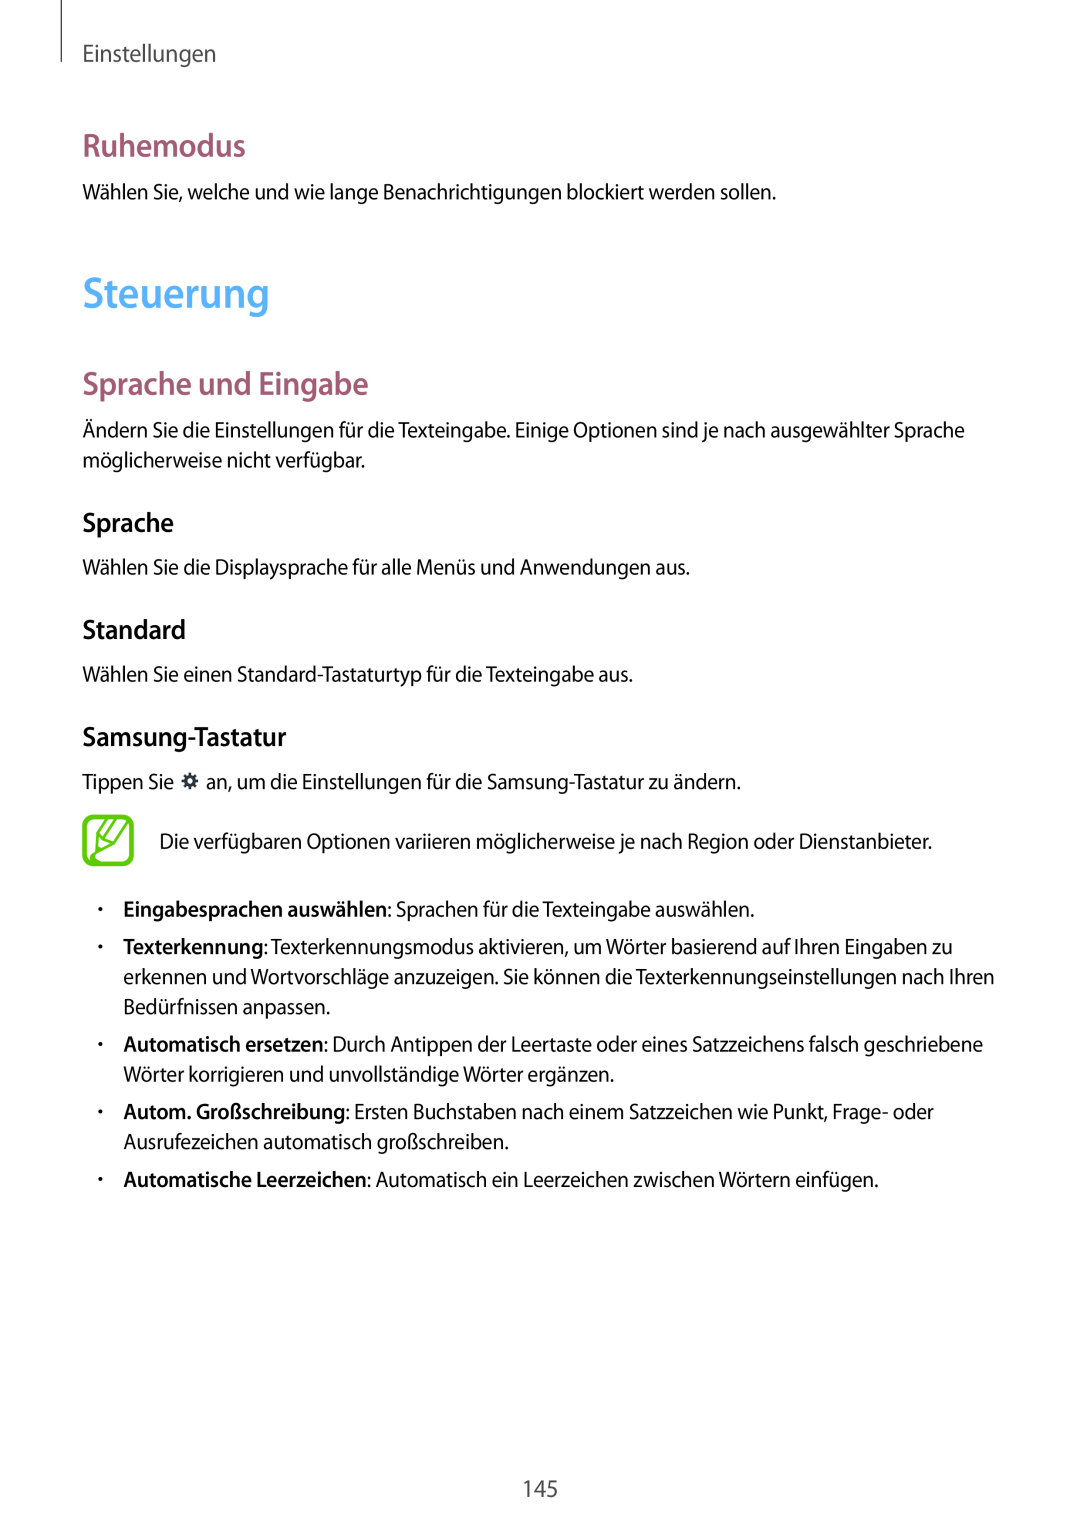 Samsung SM-P9000ZKASEB manual Steuerung, Ruhemodus, Sprache und Eingabe, Standard, Samsung-Tastatur, Einstellungen 